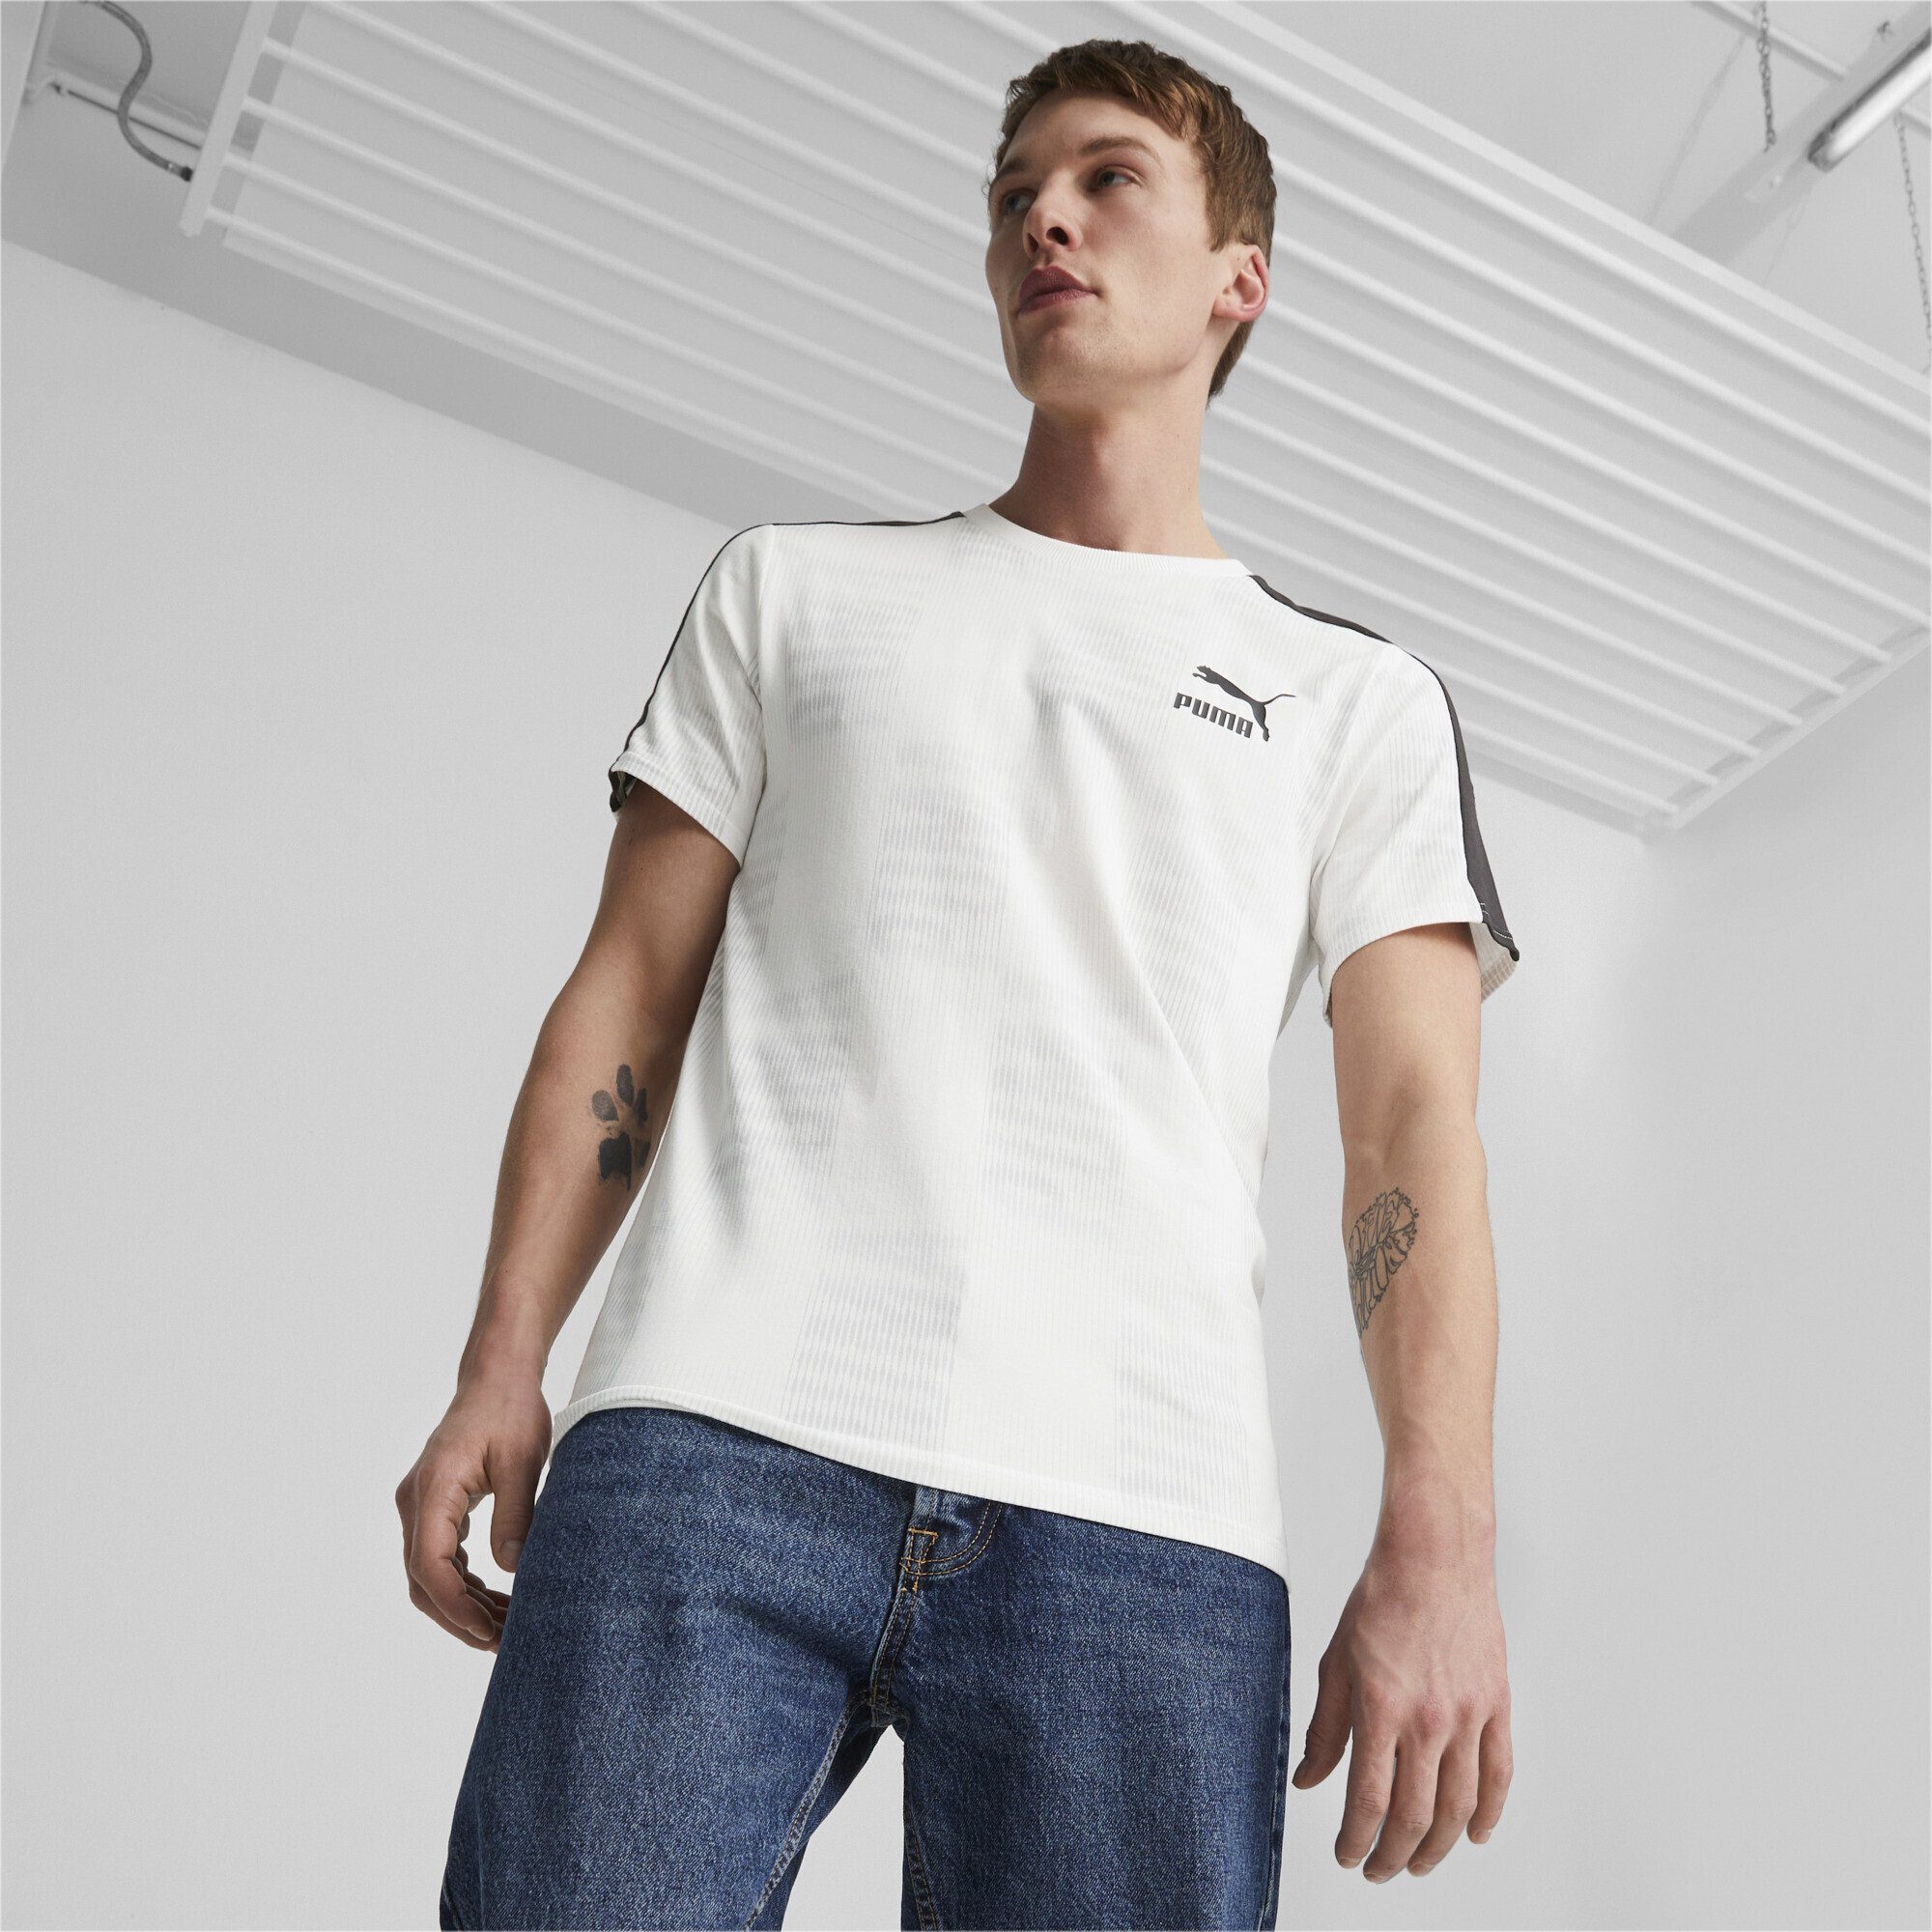 PUMA T-Shirt Sport T-Shirt White Aop Herren T7